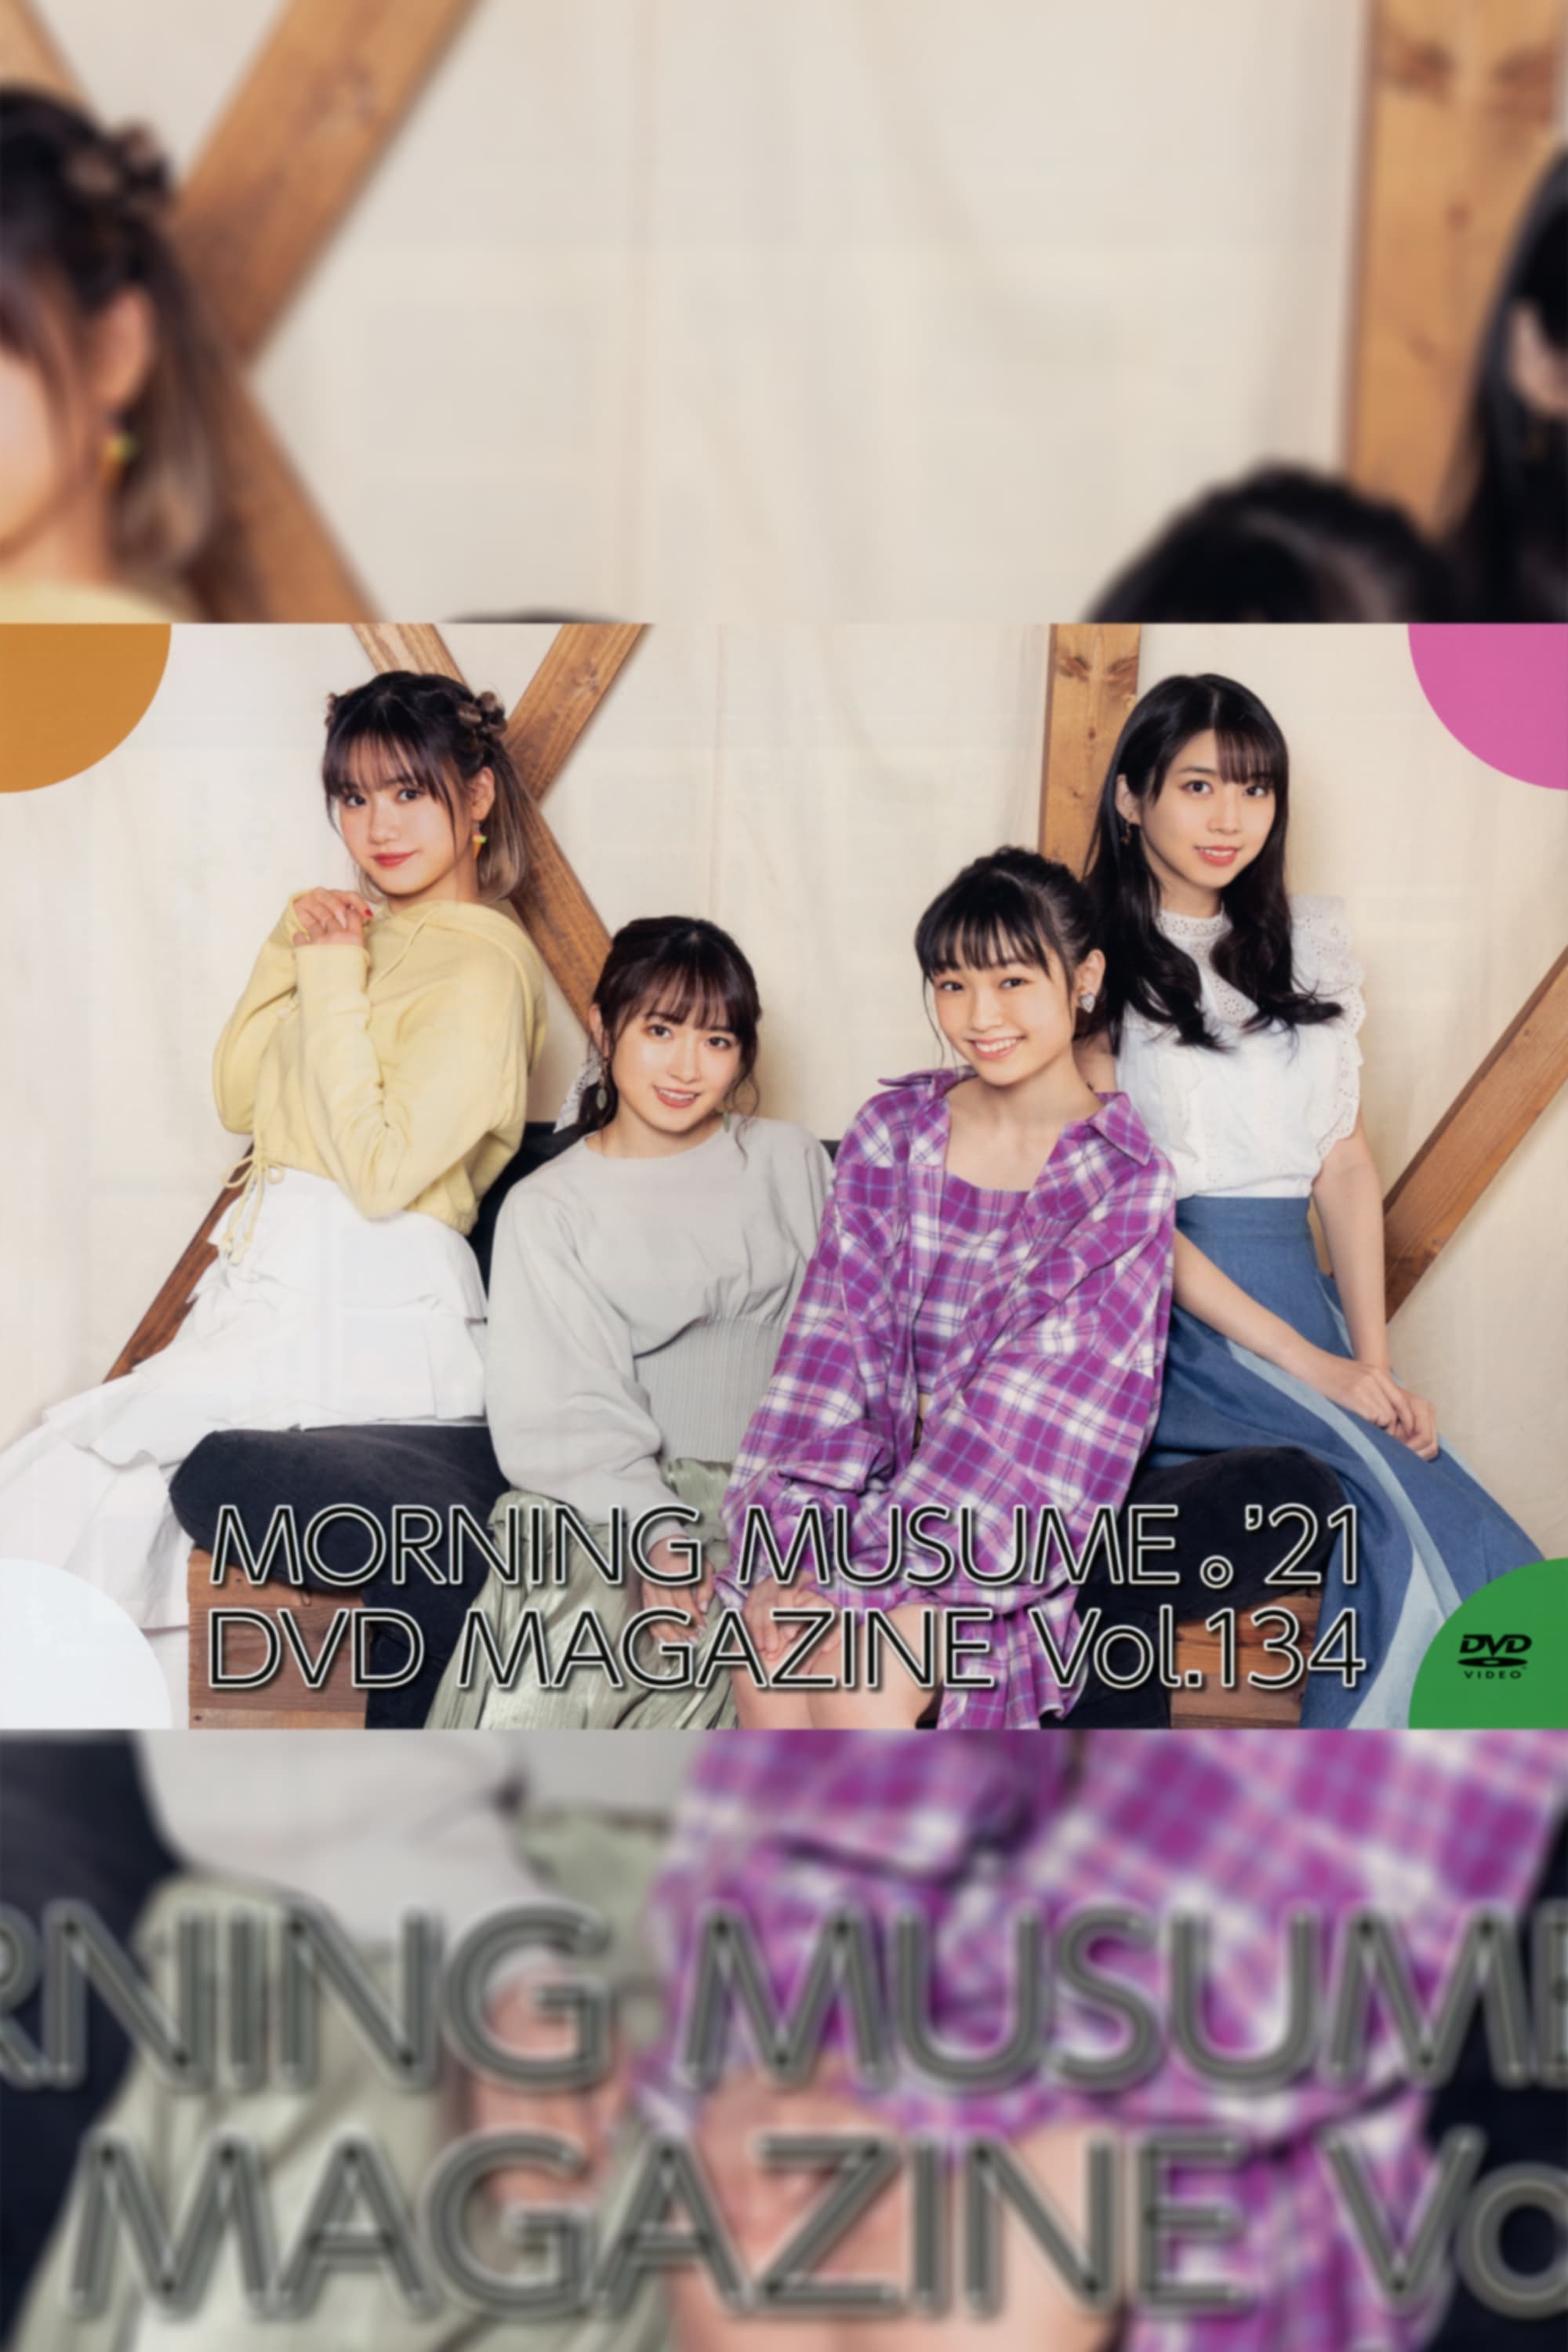 Morning Musume.'21 DVD Magazine Vol.134